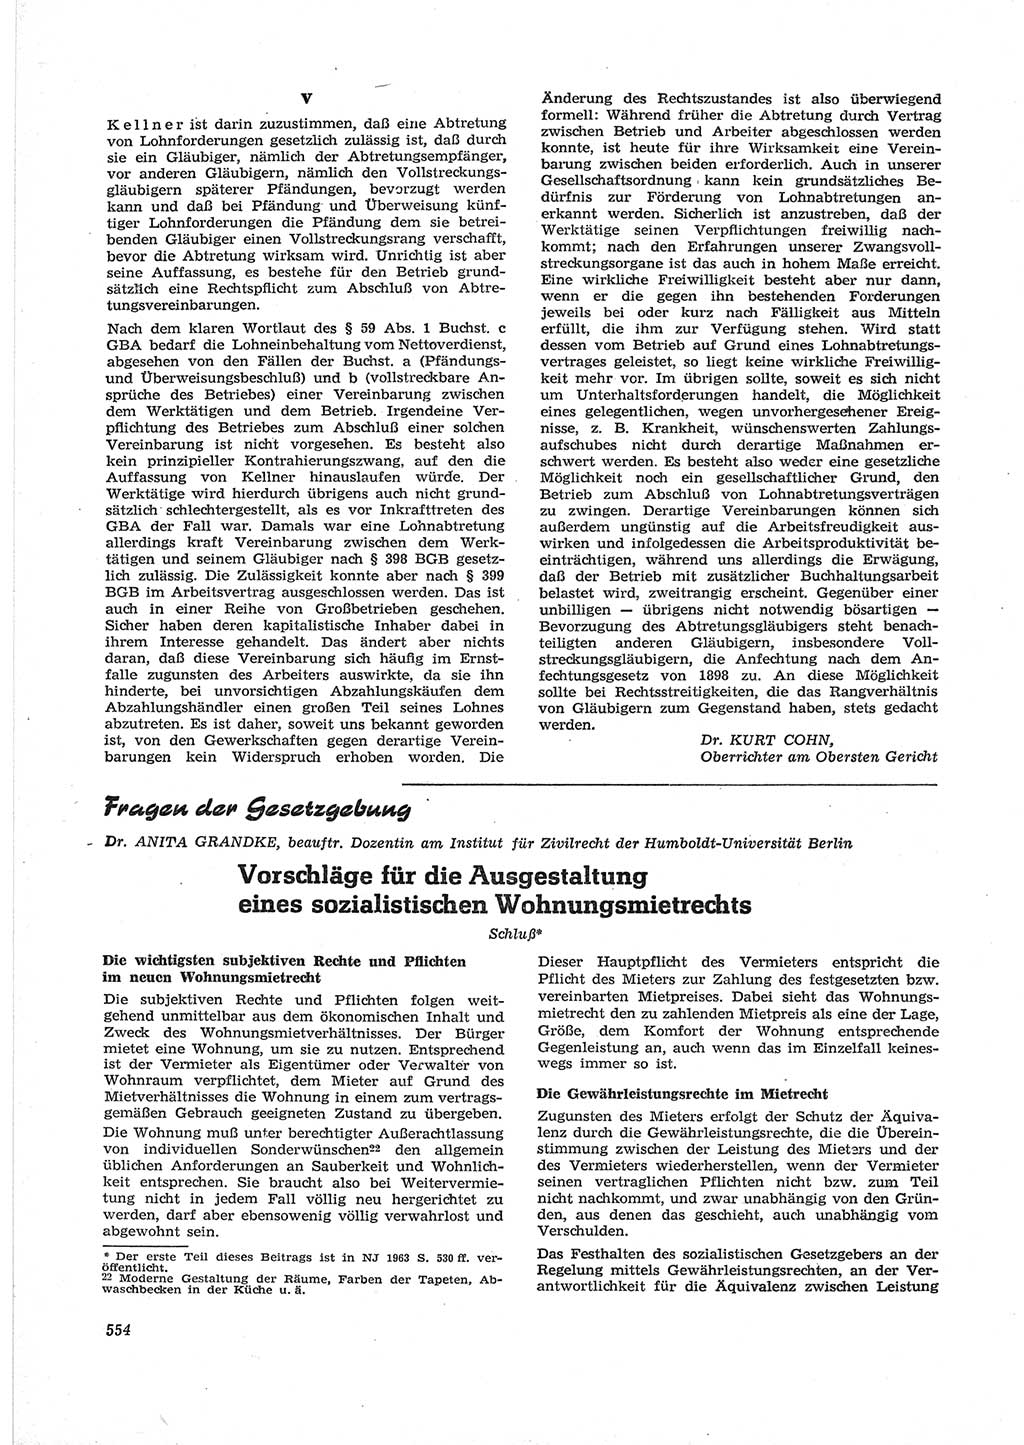 Neue Justiz (NJ), Zeitschrift für Recht und Rechtswissenschaft [Deutsche Demokratische Republik (DDR)], 17. Jahrgang 1963, Seite 554 (NJ DDR 1963, S. 554)